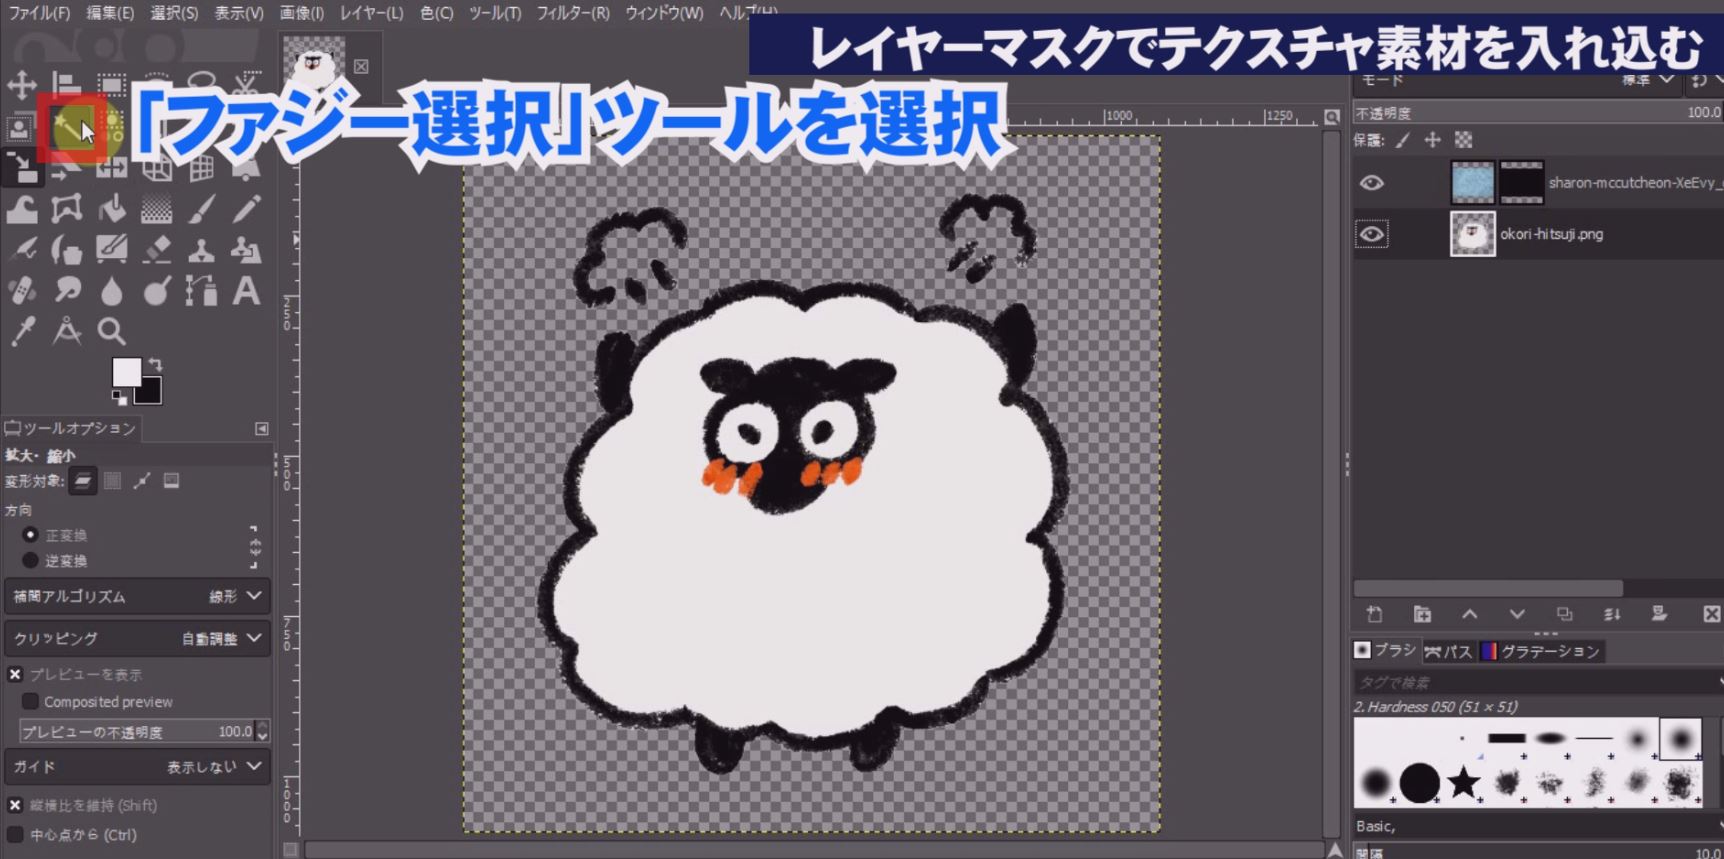 ツールボックスの「ファジー選択」を選択して羊の体の白い部分をクリックすると体の部分だけが範囲選択されます。